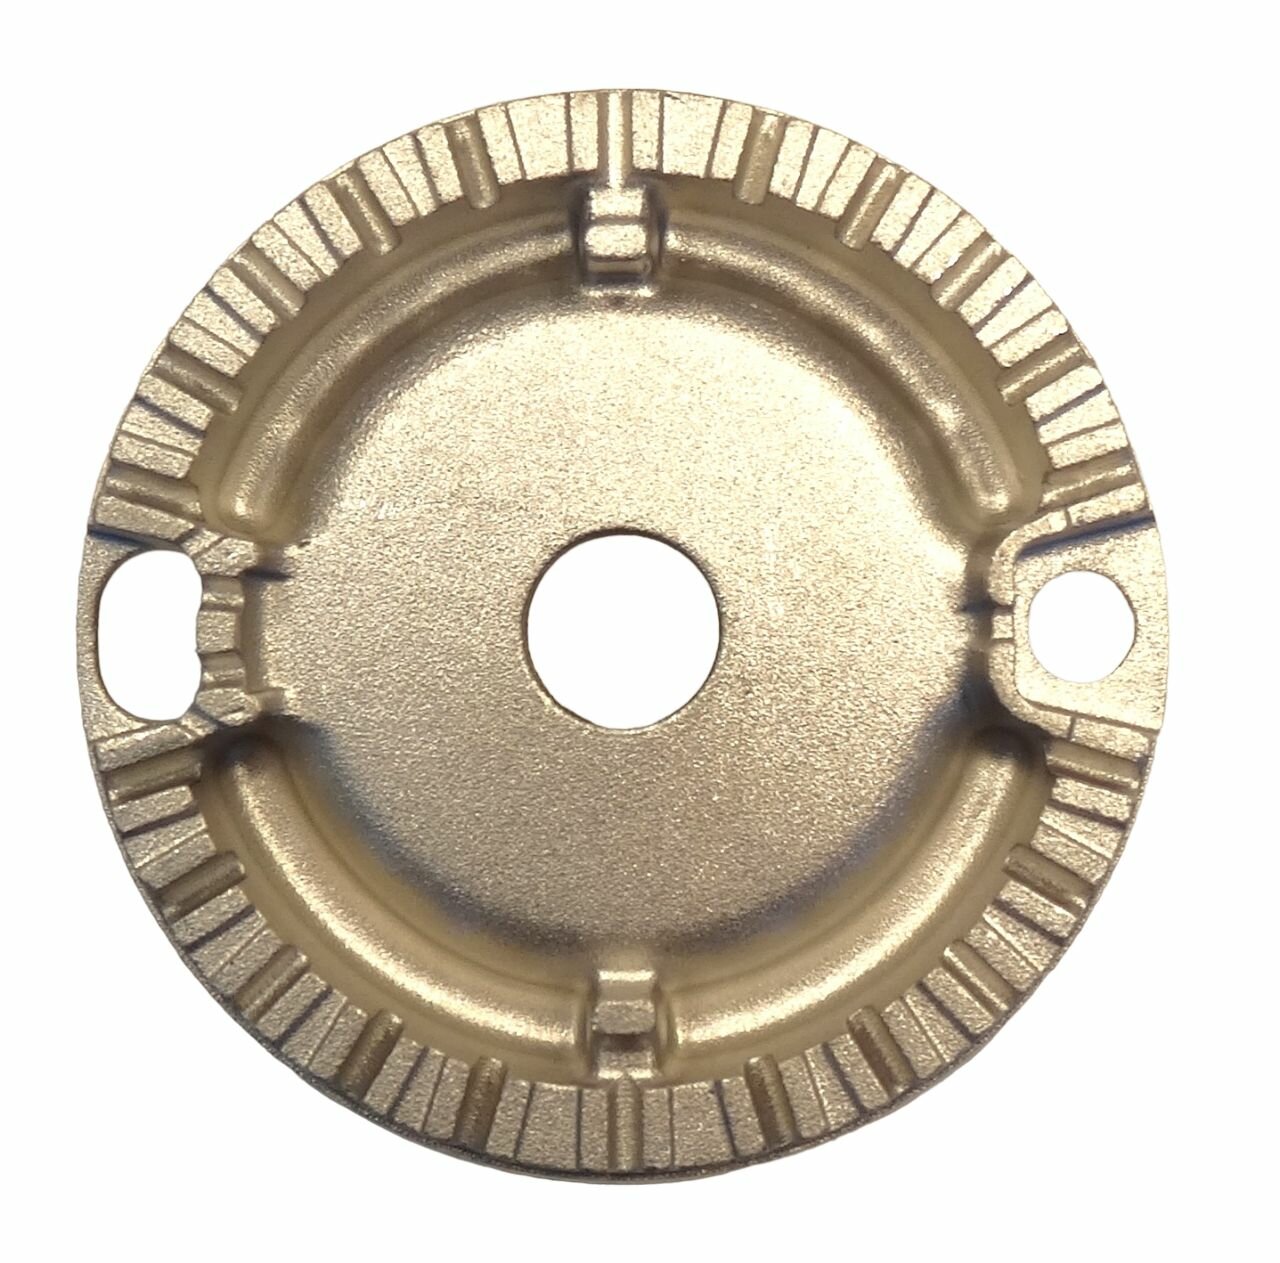 Рассекатель газовой плиты Hansa 8071834 средний, диаметр 69 мм - SOMIPRESS (Италия)